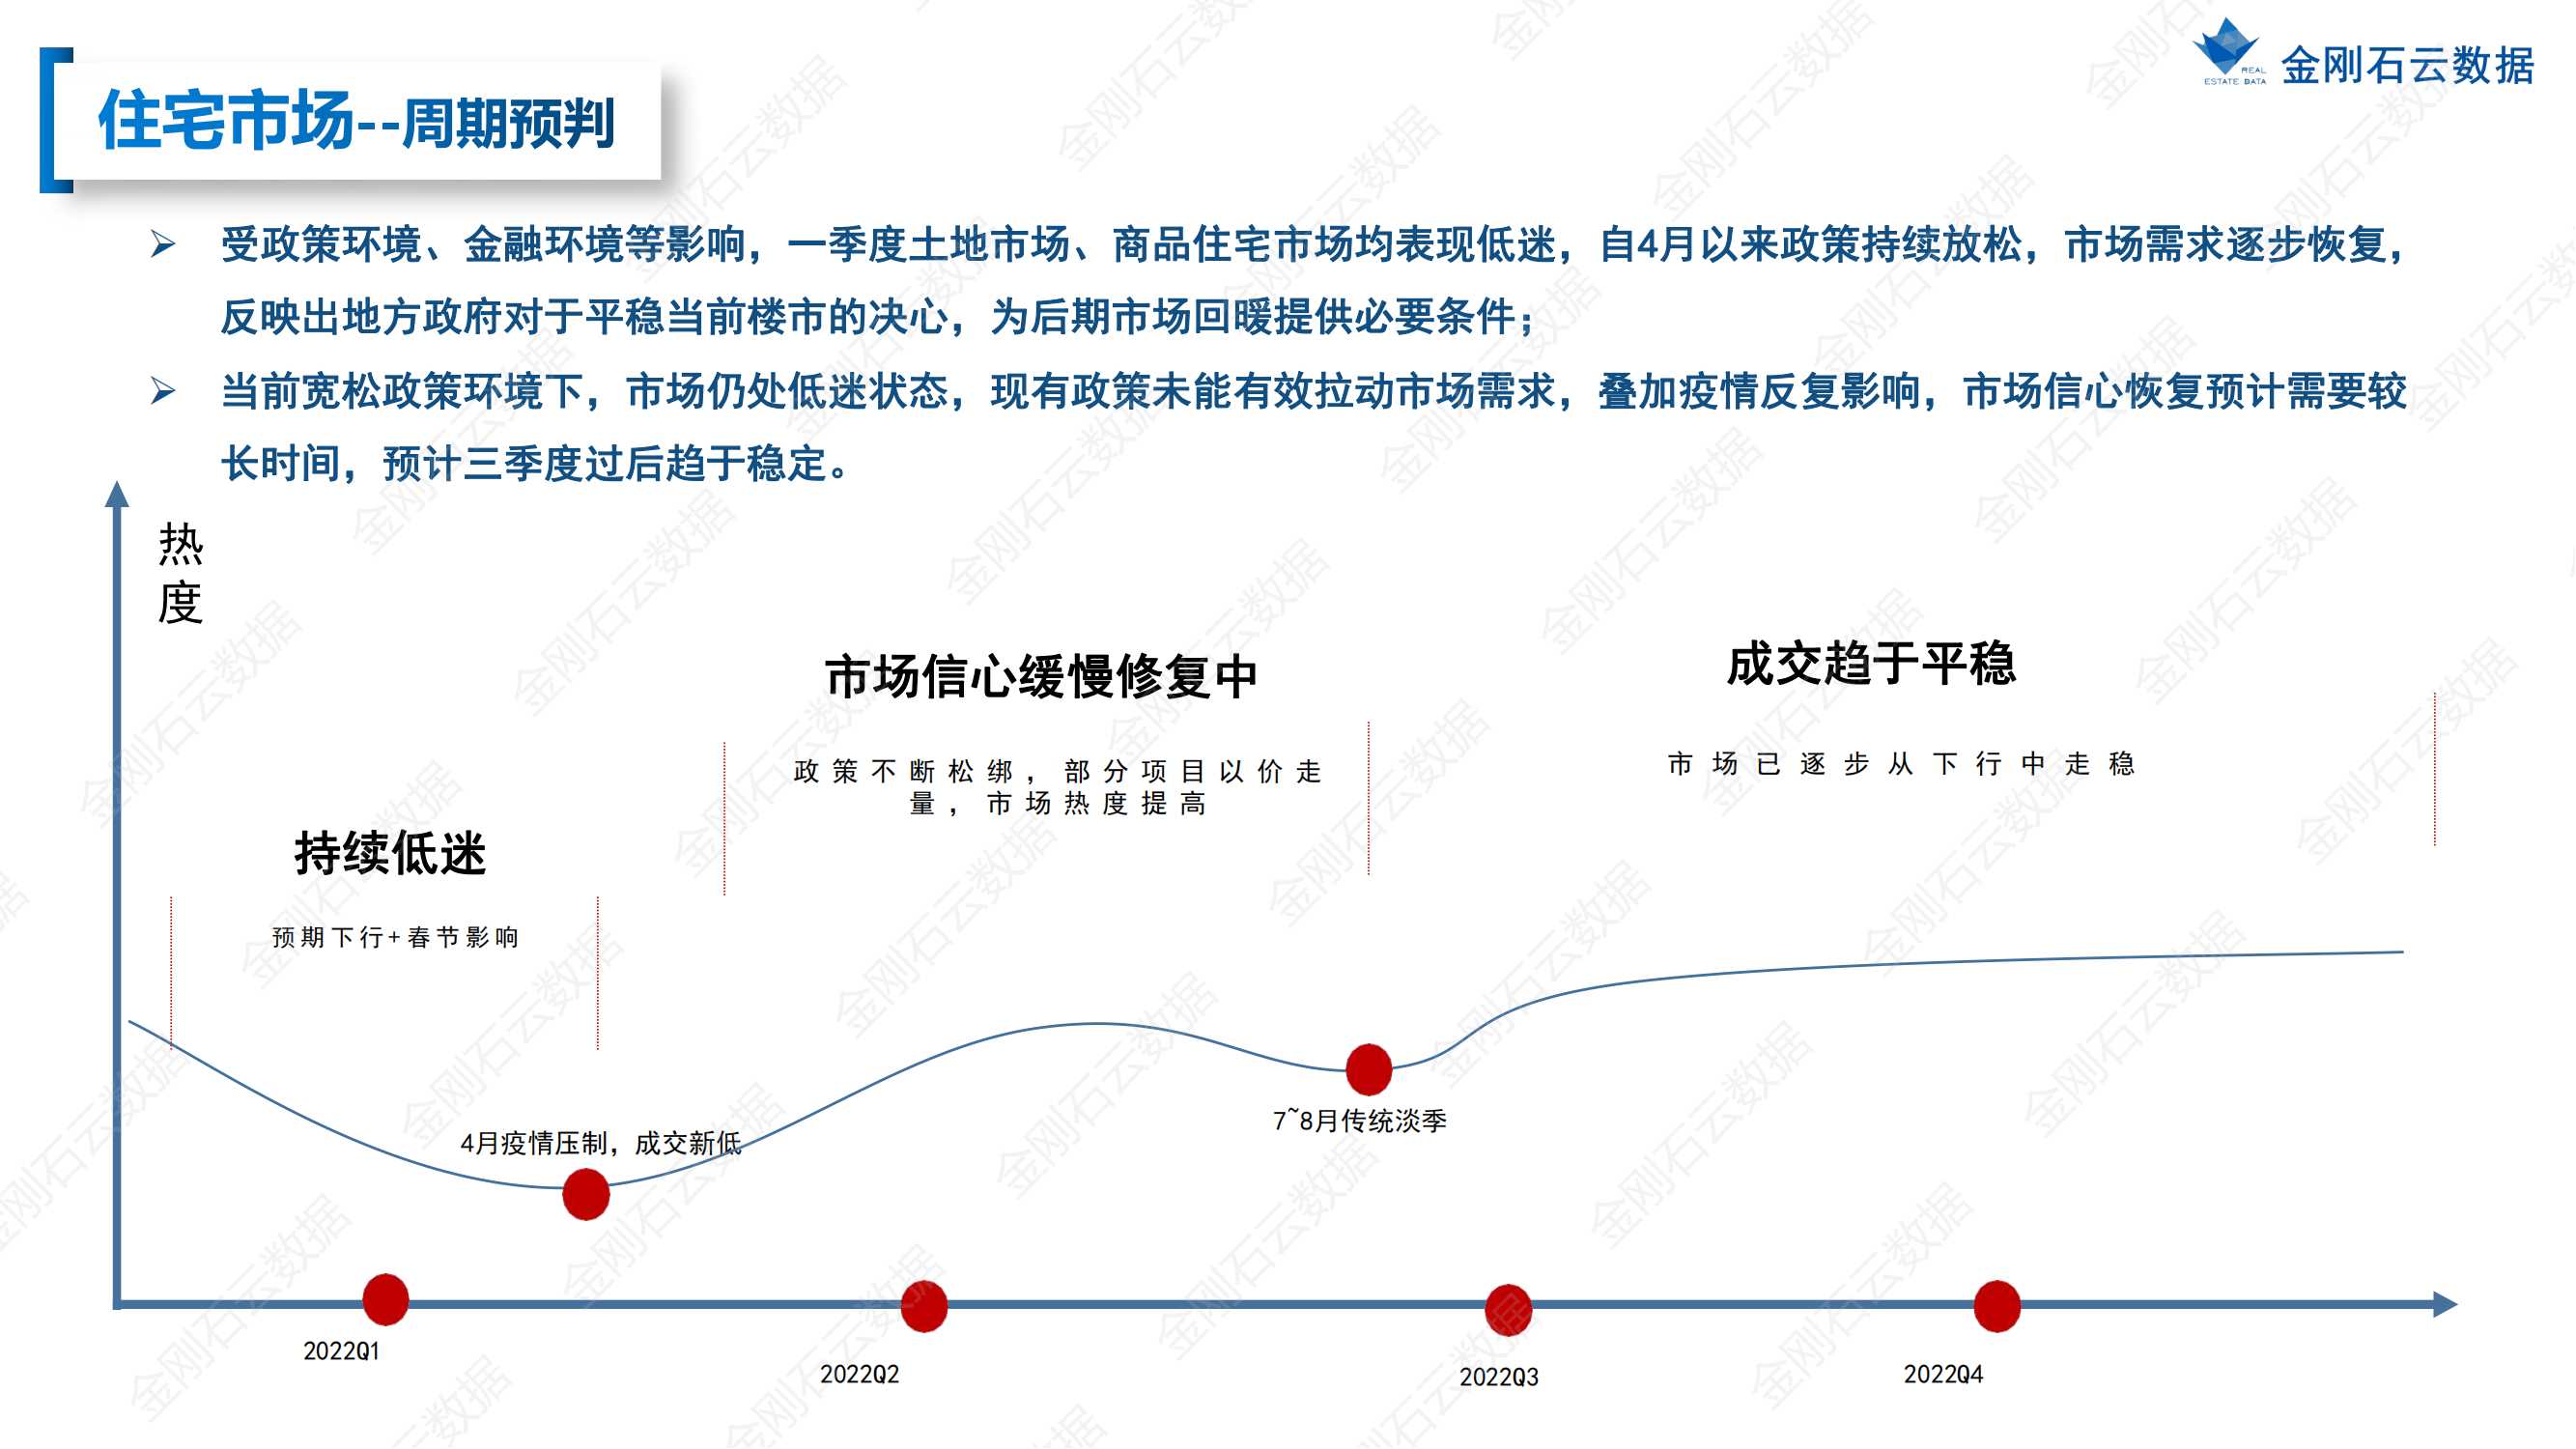 【江苏徐州】2022年上半年度市场报告(图22)